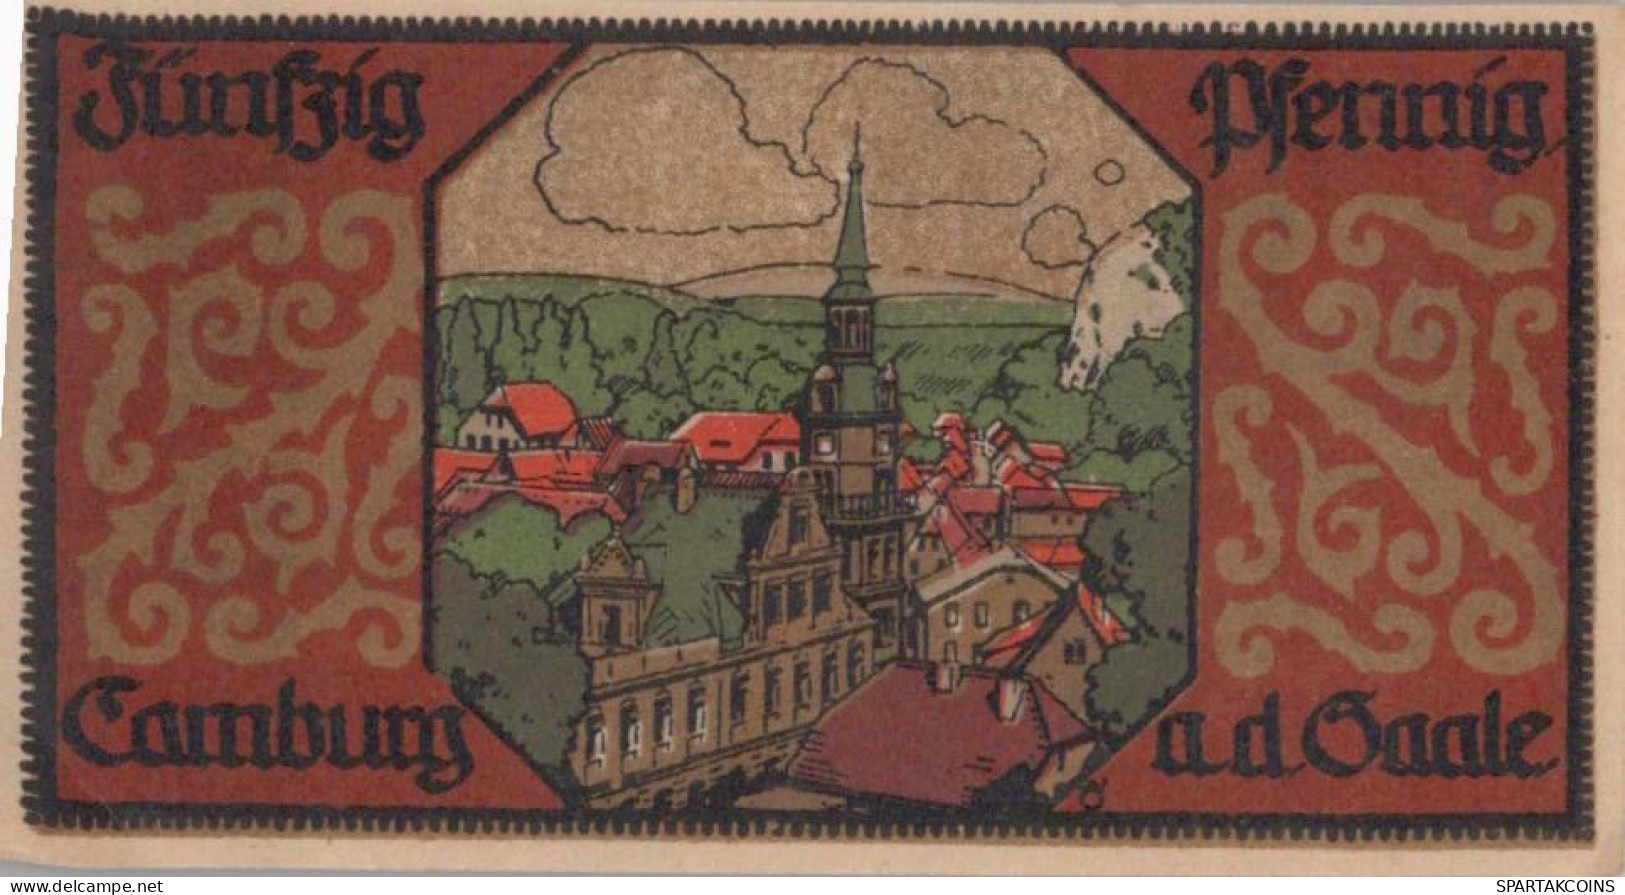 50 PFENNIG 1921 Stadt CAMBURG Thuringia UNC DEUTSCHLAND Notgeld Banknote #PA372 - [11] Lokale Uitgaven